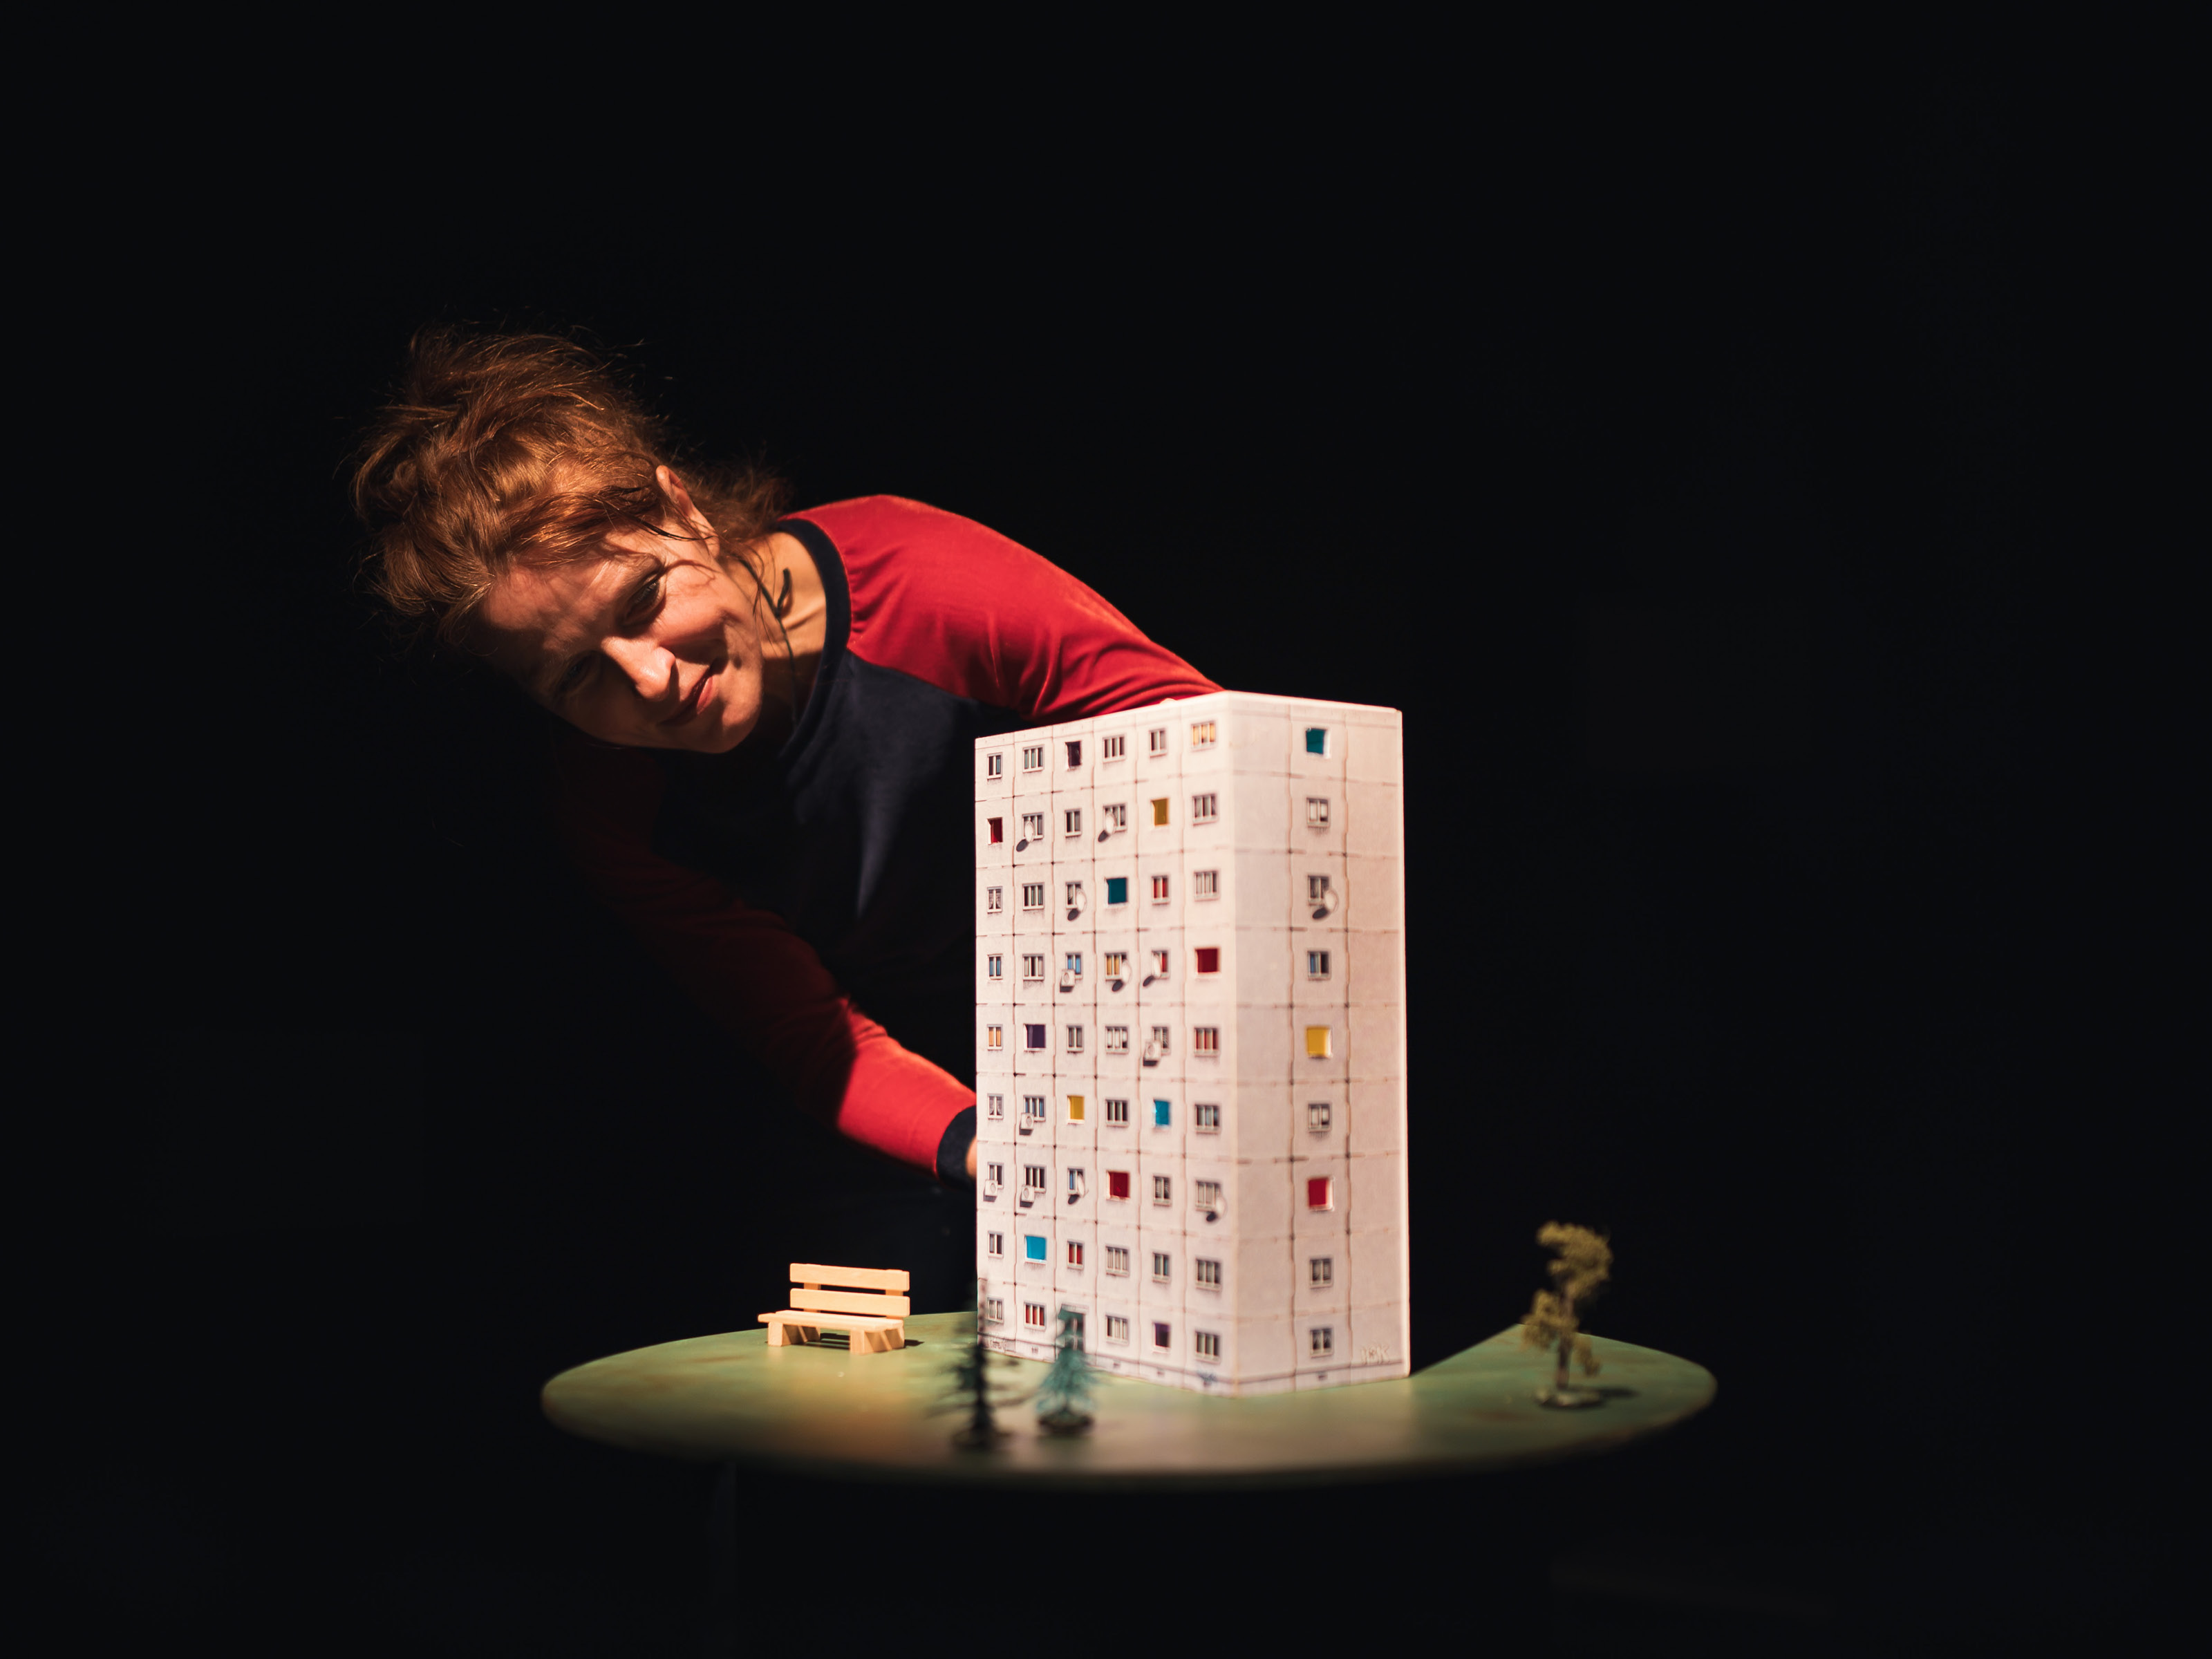 Puppenspielerin Annegret Geist beugt sich über ein Hochhaus mit neun Stockwerken. Vor dem Hochhaus steht eine kleine Holzbank auf einer angedeuteten Grünfläche.